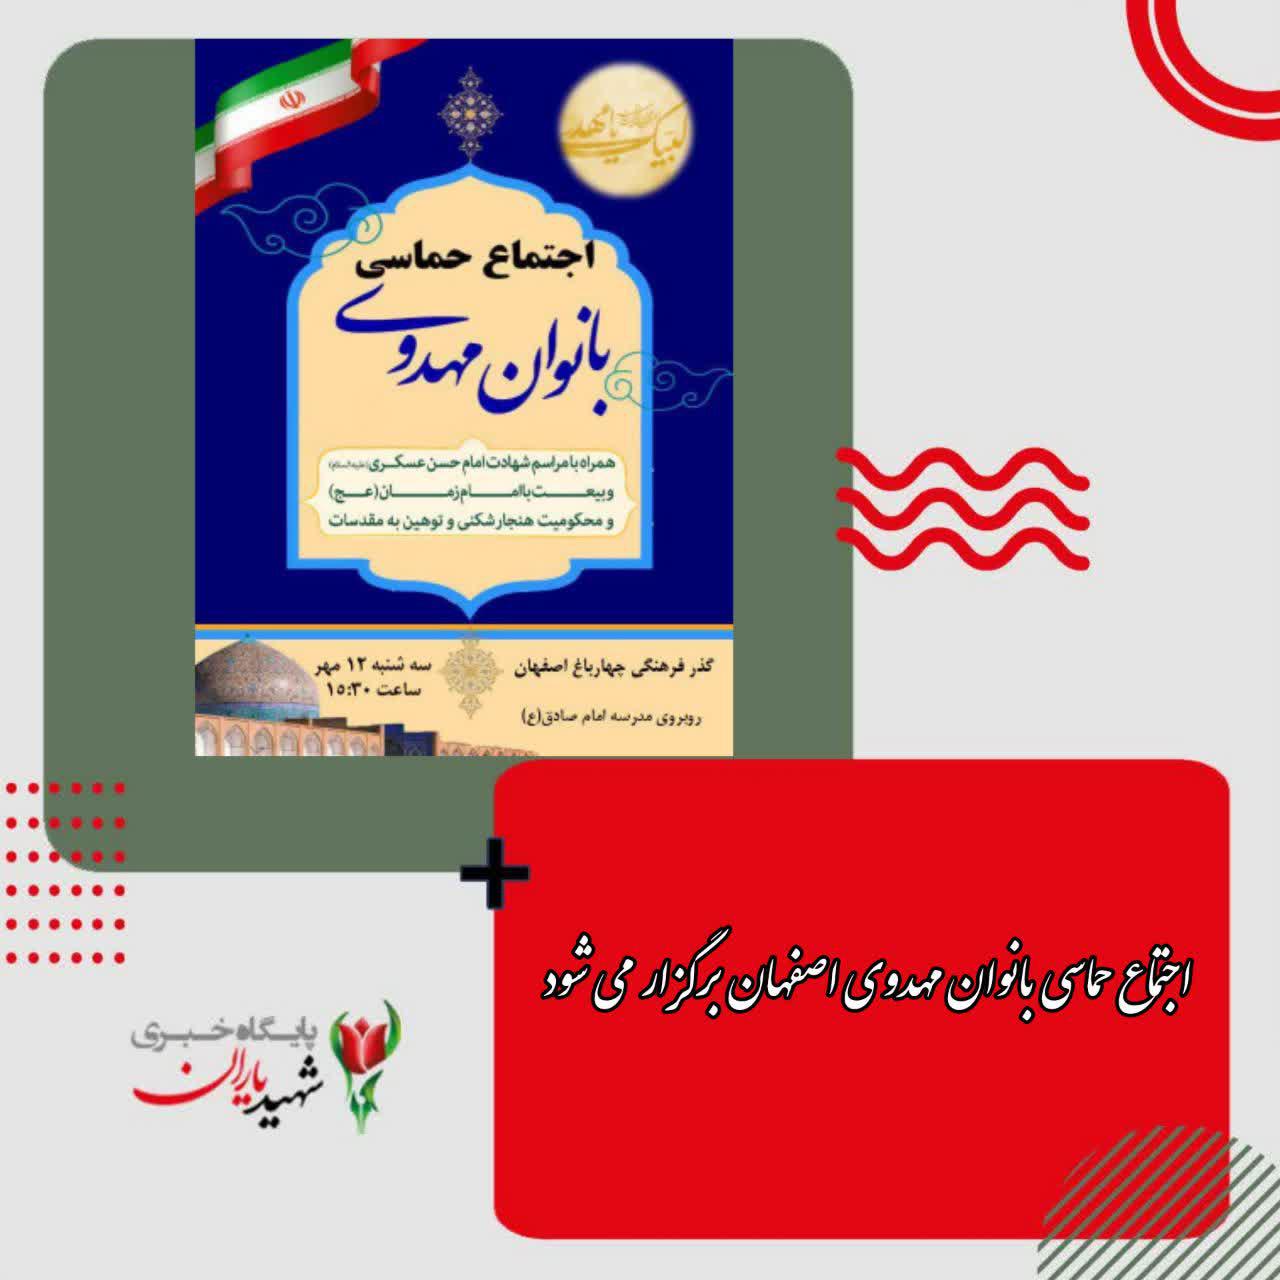 اجتماع حماسی بانوان مهدوی اصفهان برگزار می شود